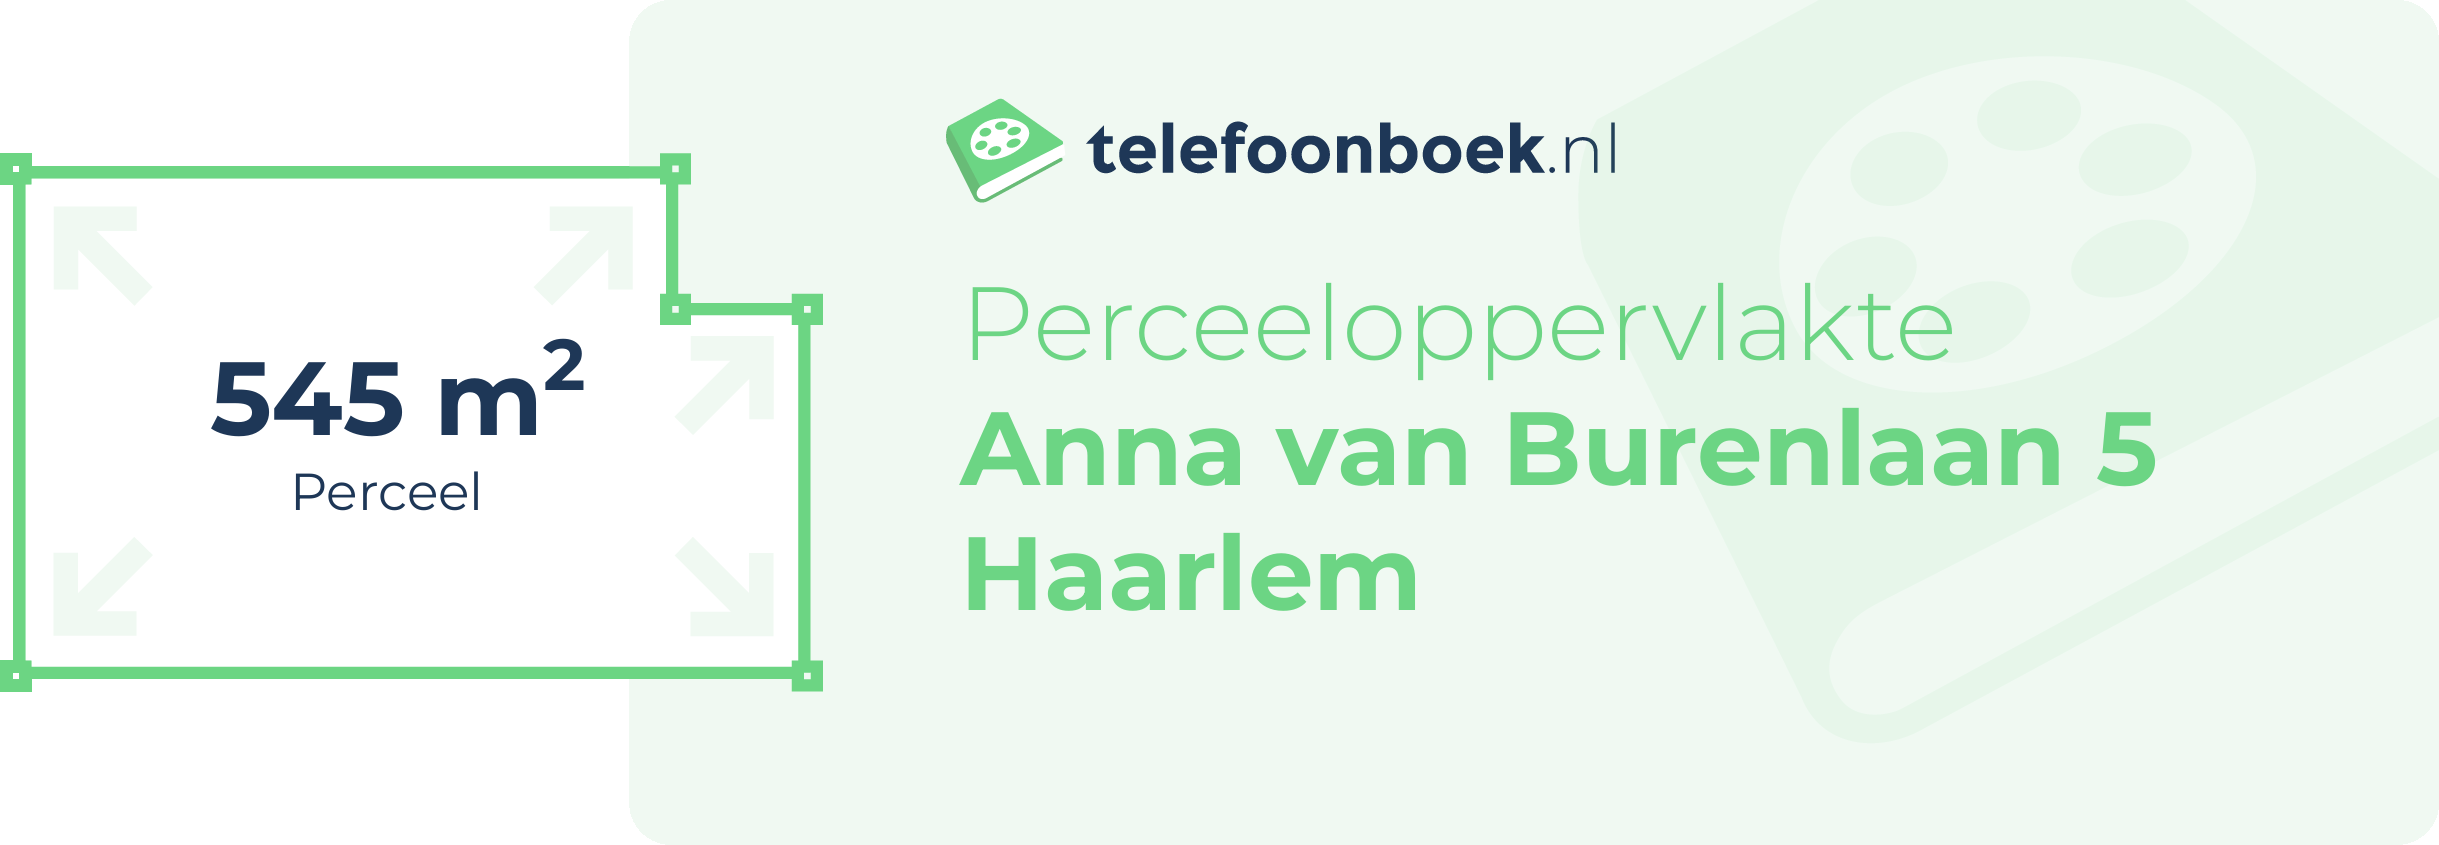 Perceeloppervlakte Anna Van Burenlaan 5 Haarlem